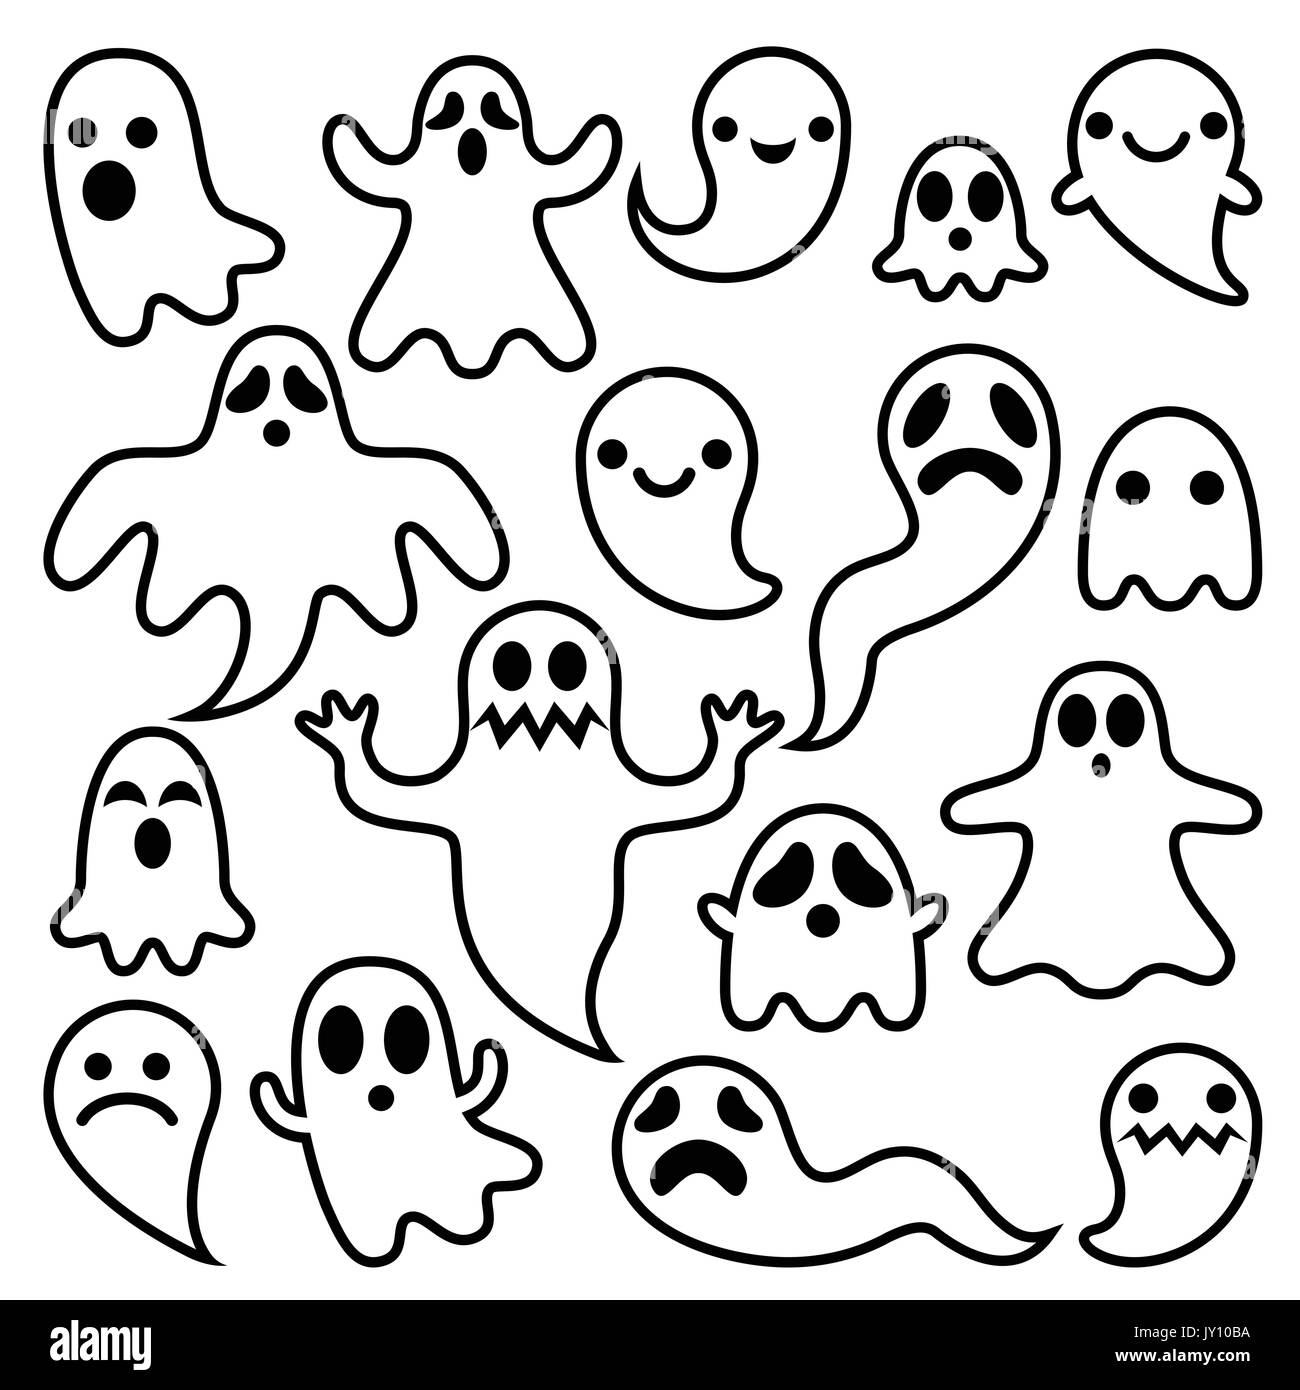 Gruselige Geister Design, Halloween Zeichen Icons Set Vector Icons für Halloween-Cartoon ghost Zeichen isoliert auf weißem Stock Vektor